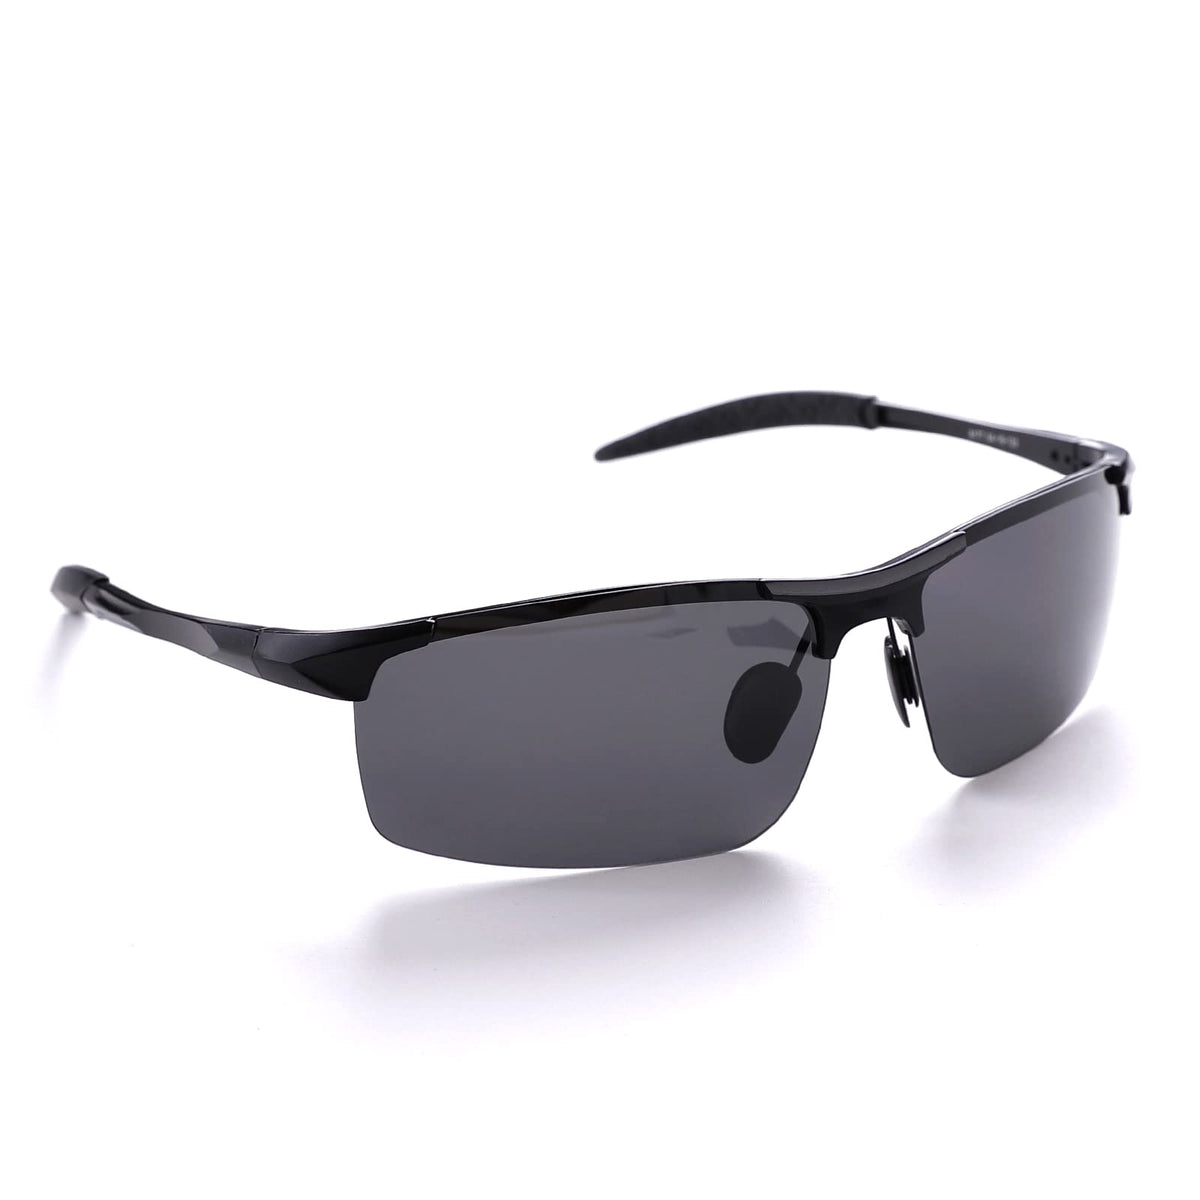 Intellilens Aviator Polarized & UV Protected Sunglasses For Men